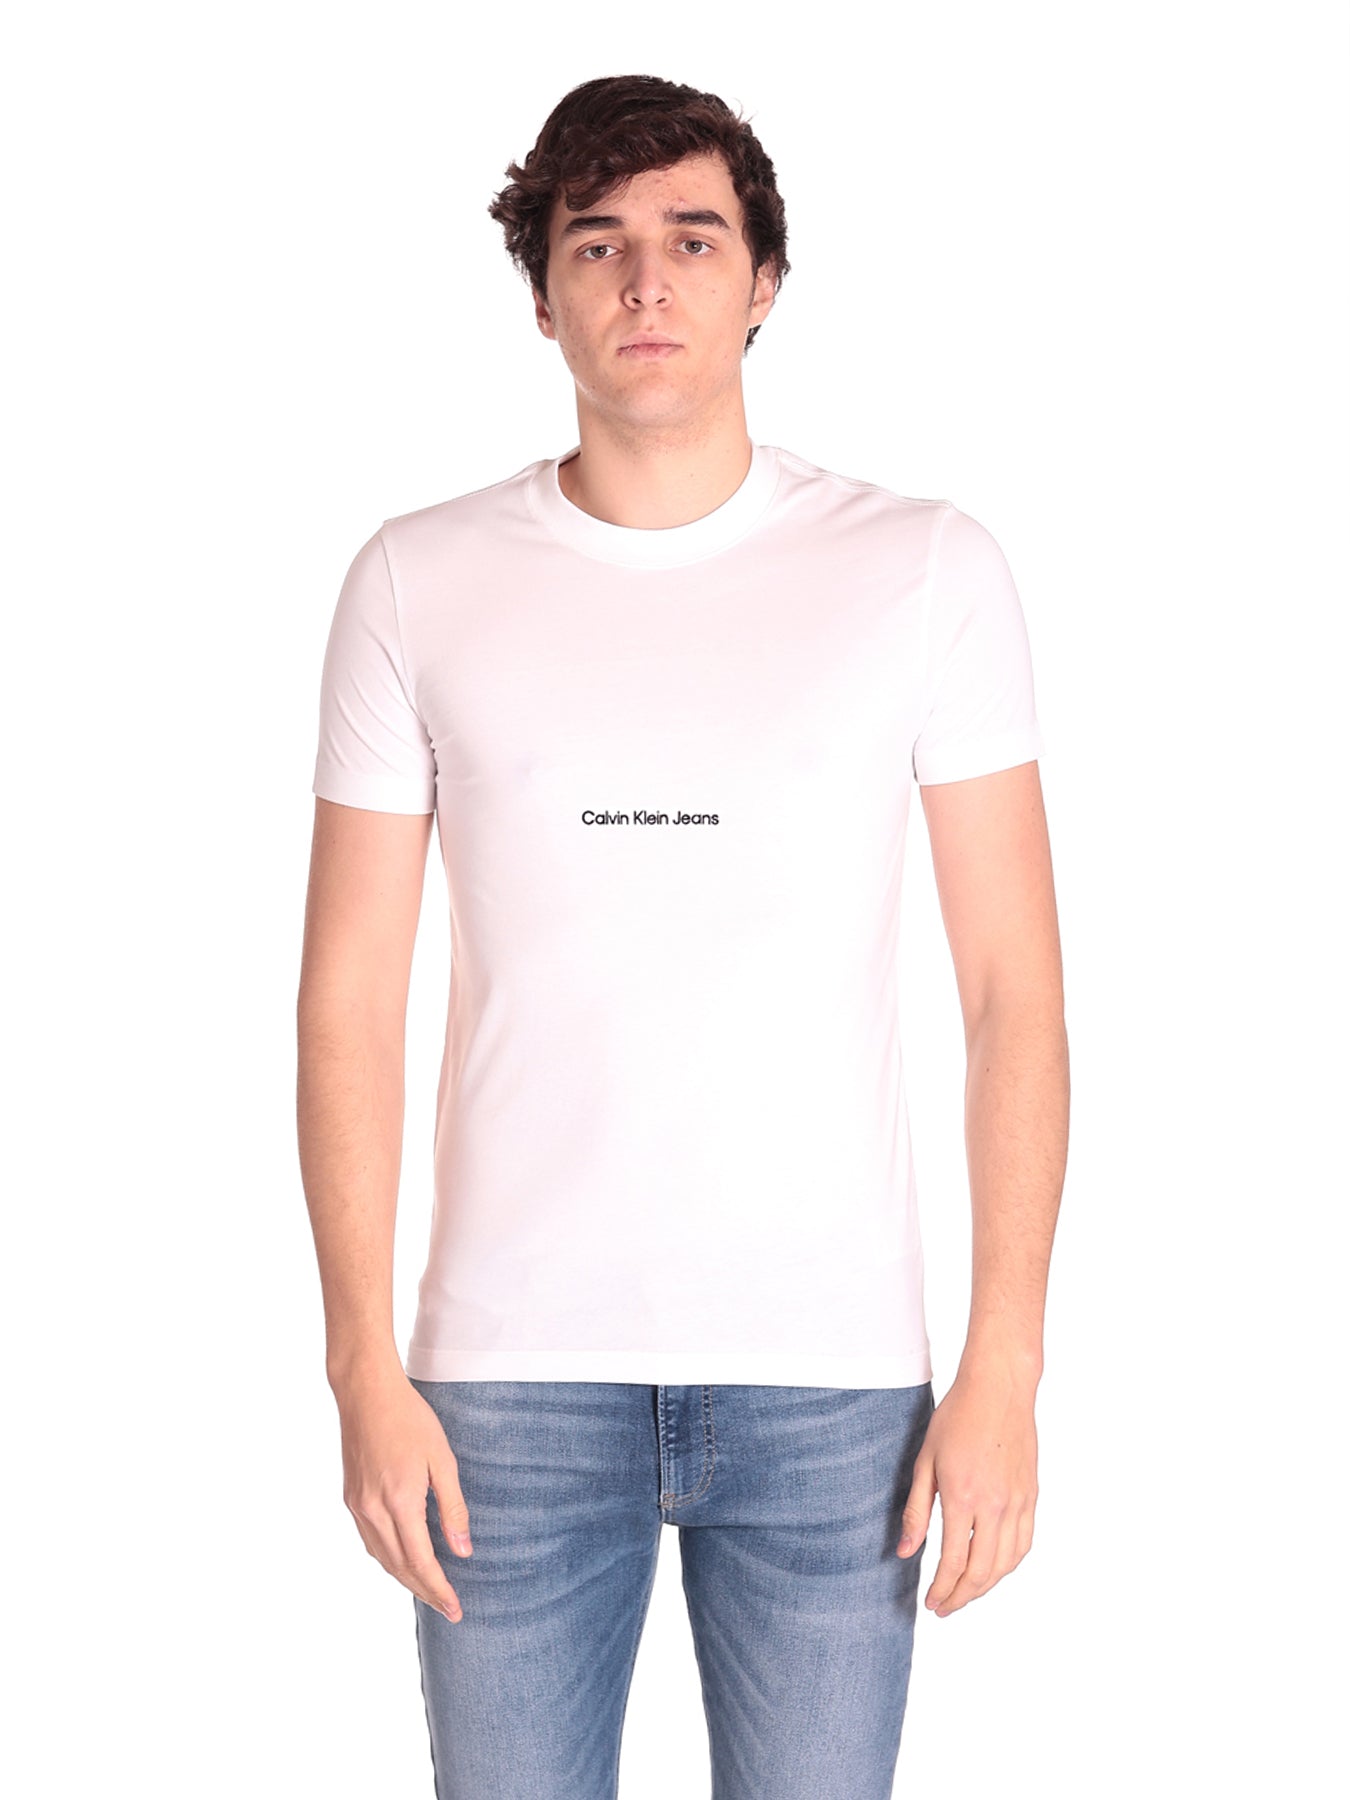 T-Shirt J30j322848 Bright White